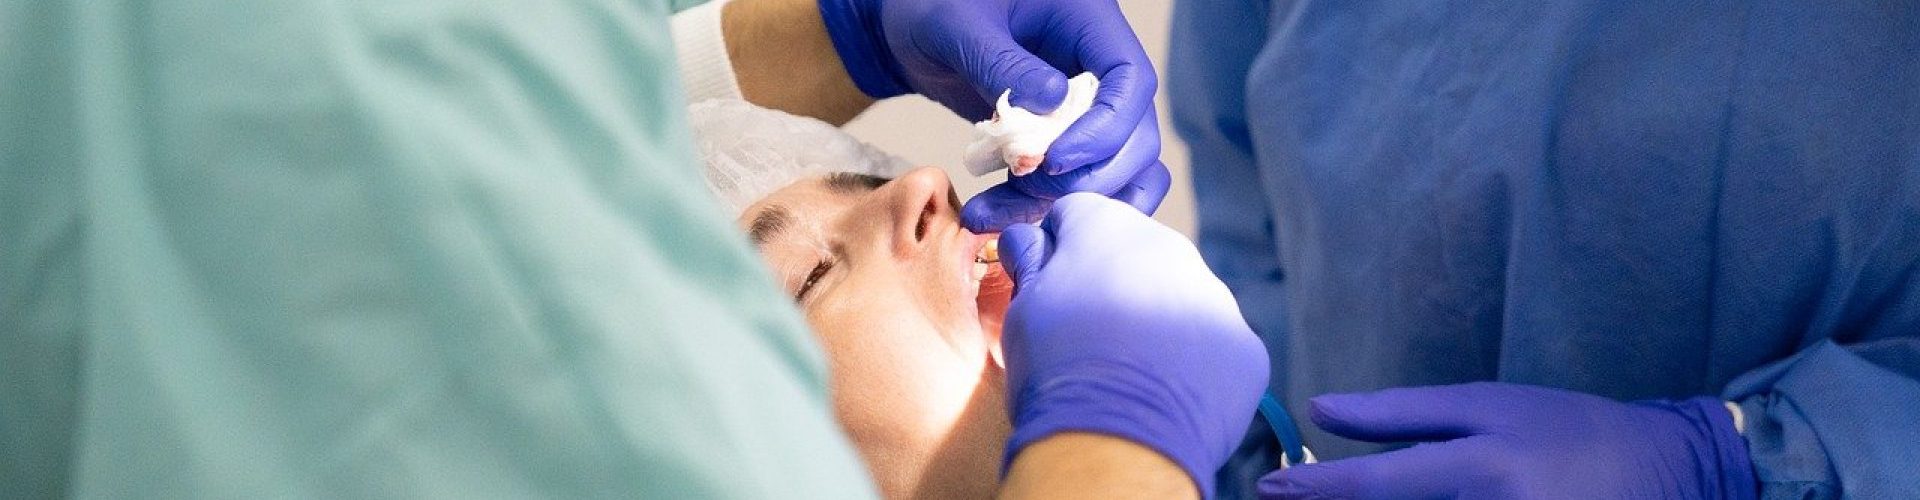 3 raisons pour lesquelles vous devriez avoir recours à l’orthodontie